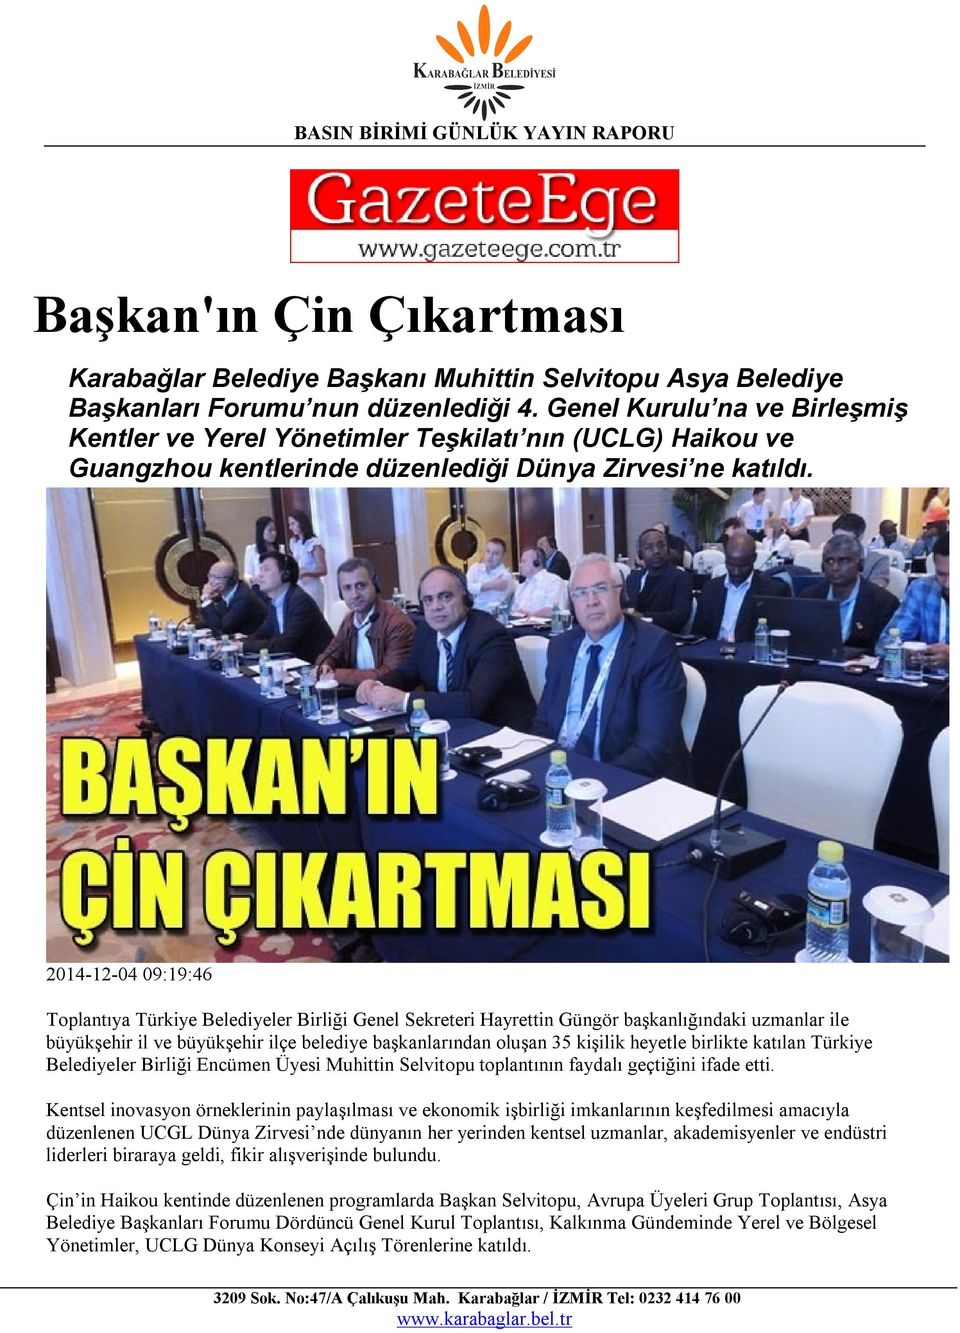 2014-12-04 09:19:46 Toplantıya Türkiye Belediyeler Birliği Genel Sekreteri Hayrettin Güngör başkanlığındaki uzmanlar ile büyükşehir il ve büyükşehir ilçe belediye başkanlarından oluşan 35 kişilik